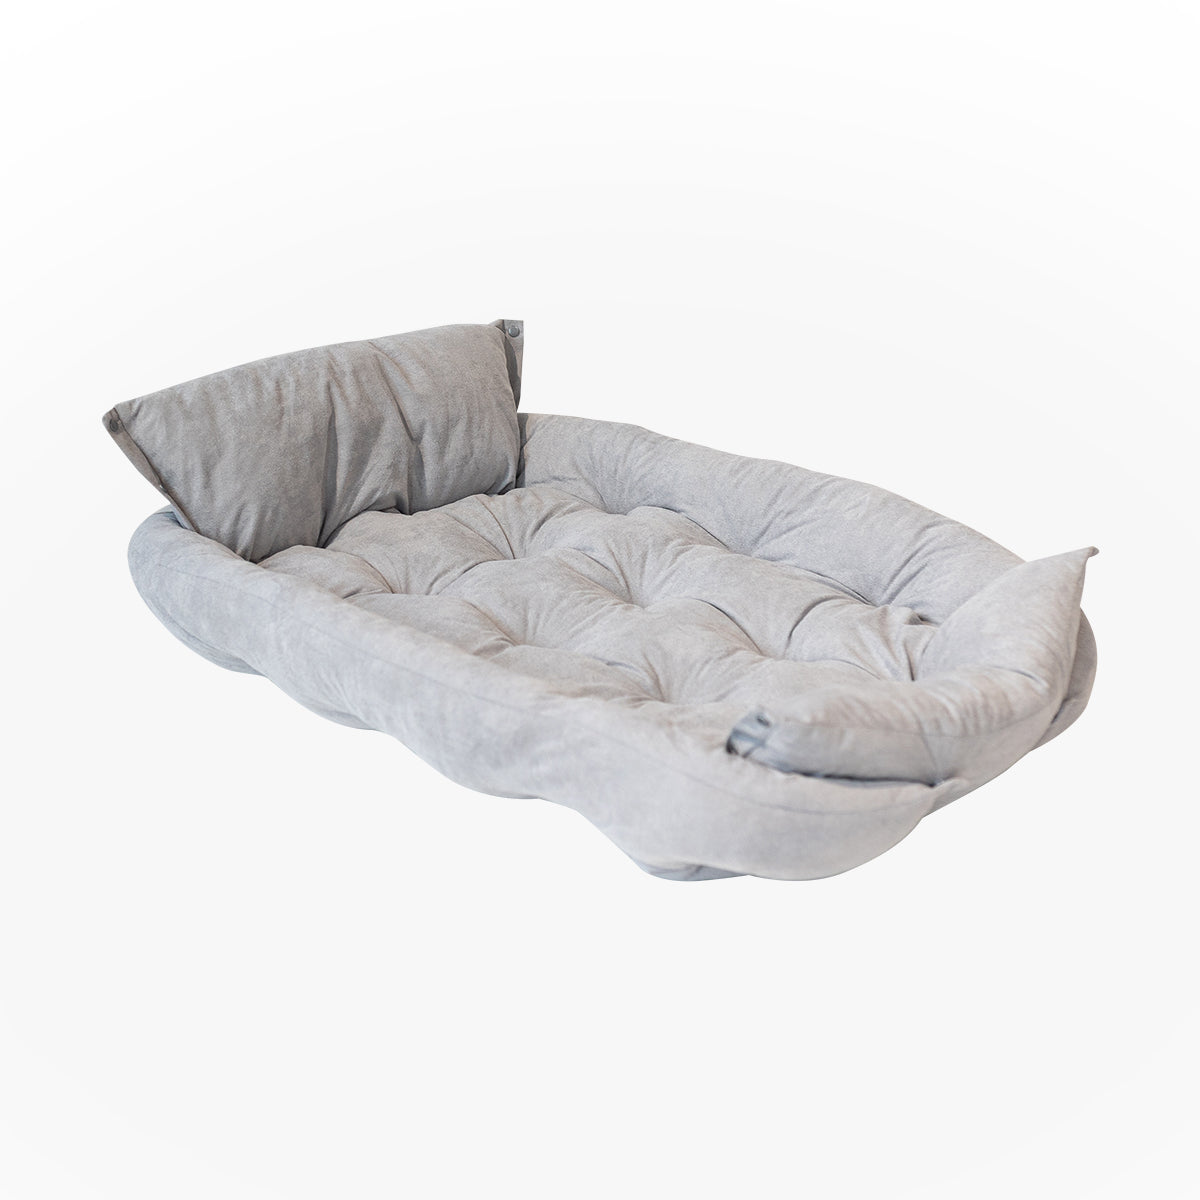 image - Grey Dog Bed Large